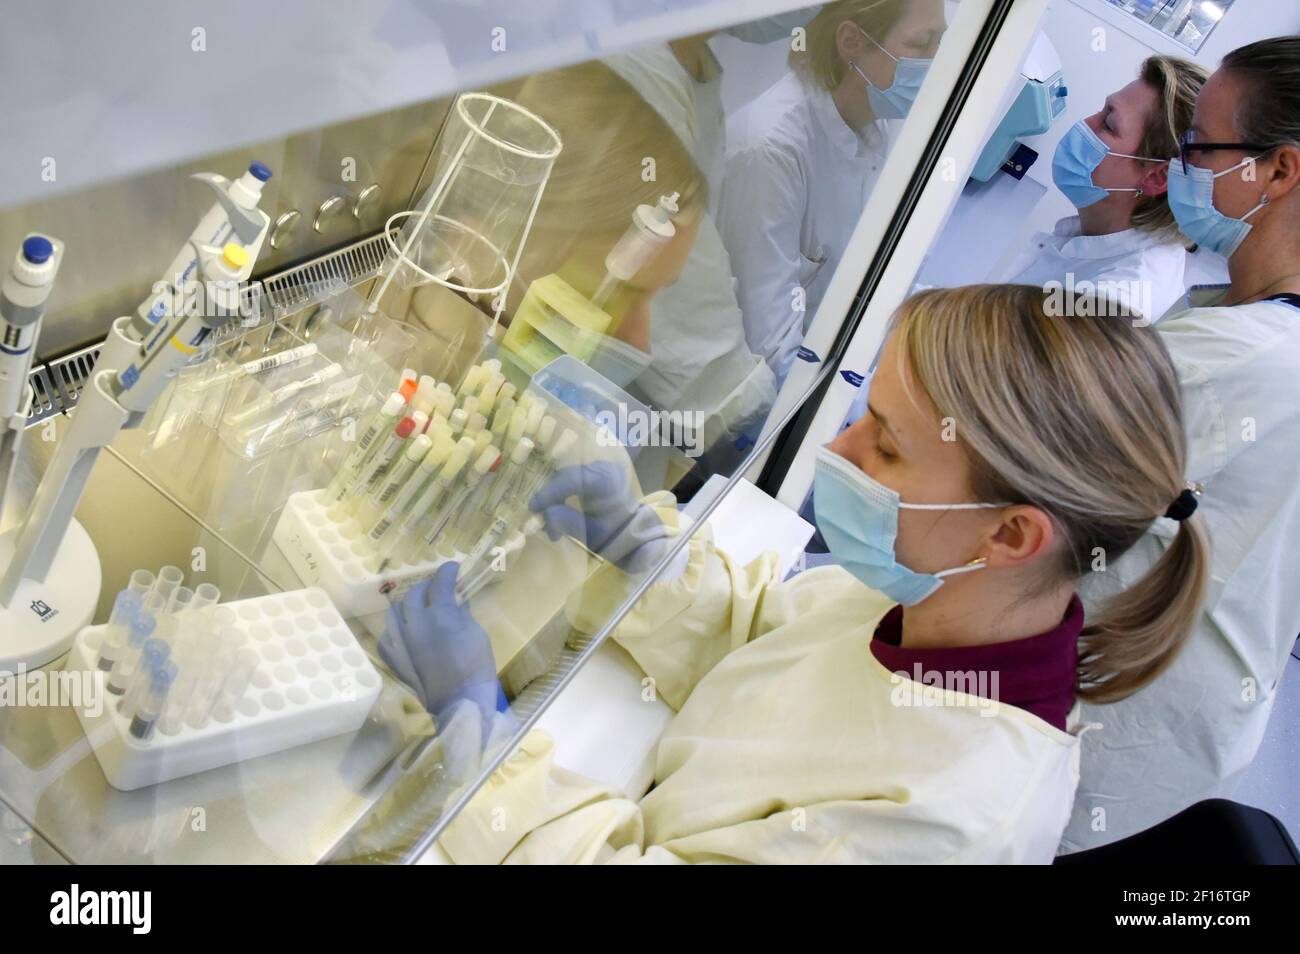 03 marzo 2021, Sassonia, Lipsia: In un laboratorio PCR di MVZ Labor, il capo del reparto PCR per malattie infettive, Dr. Katja Sänger, prepara i tamponi dei pazienti per la diagnostica SARS-COV-2 su un dispositivo analitico al banco di lavoro di sicurezza. Il laboratorio, che fa parte del gruppo Limbach, elabora circa 10,000 campioni PCR alla settimana per il rilevamento della SARS-COV-2 per ospedali e medici generici. Attualmente vengono diagnosticate anche varianti di virus con un potenziale di rischio aumentato, tra cui la variante britannica B.1.1.7, attualmente particolarmente diffusa, ma anche la variante sudafricana A. Foto Stock